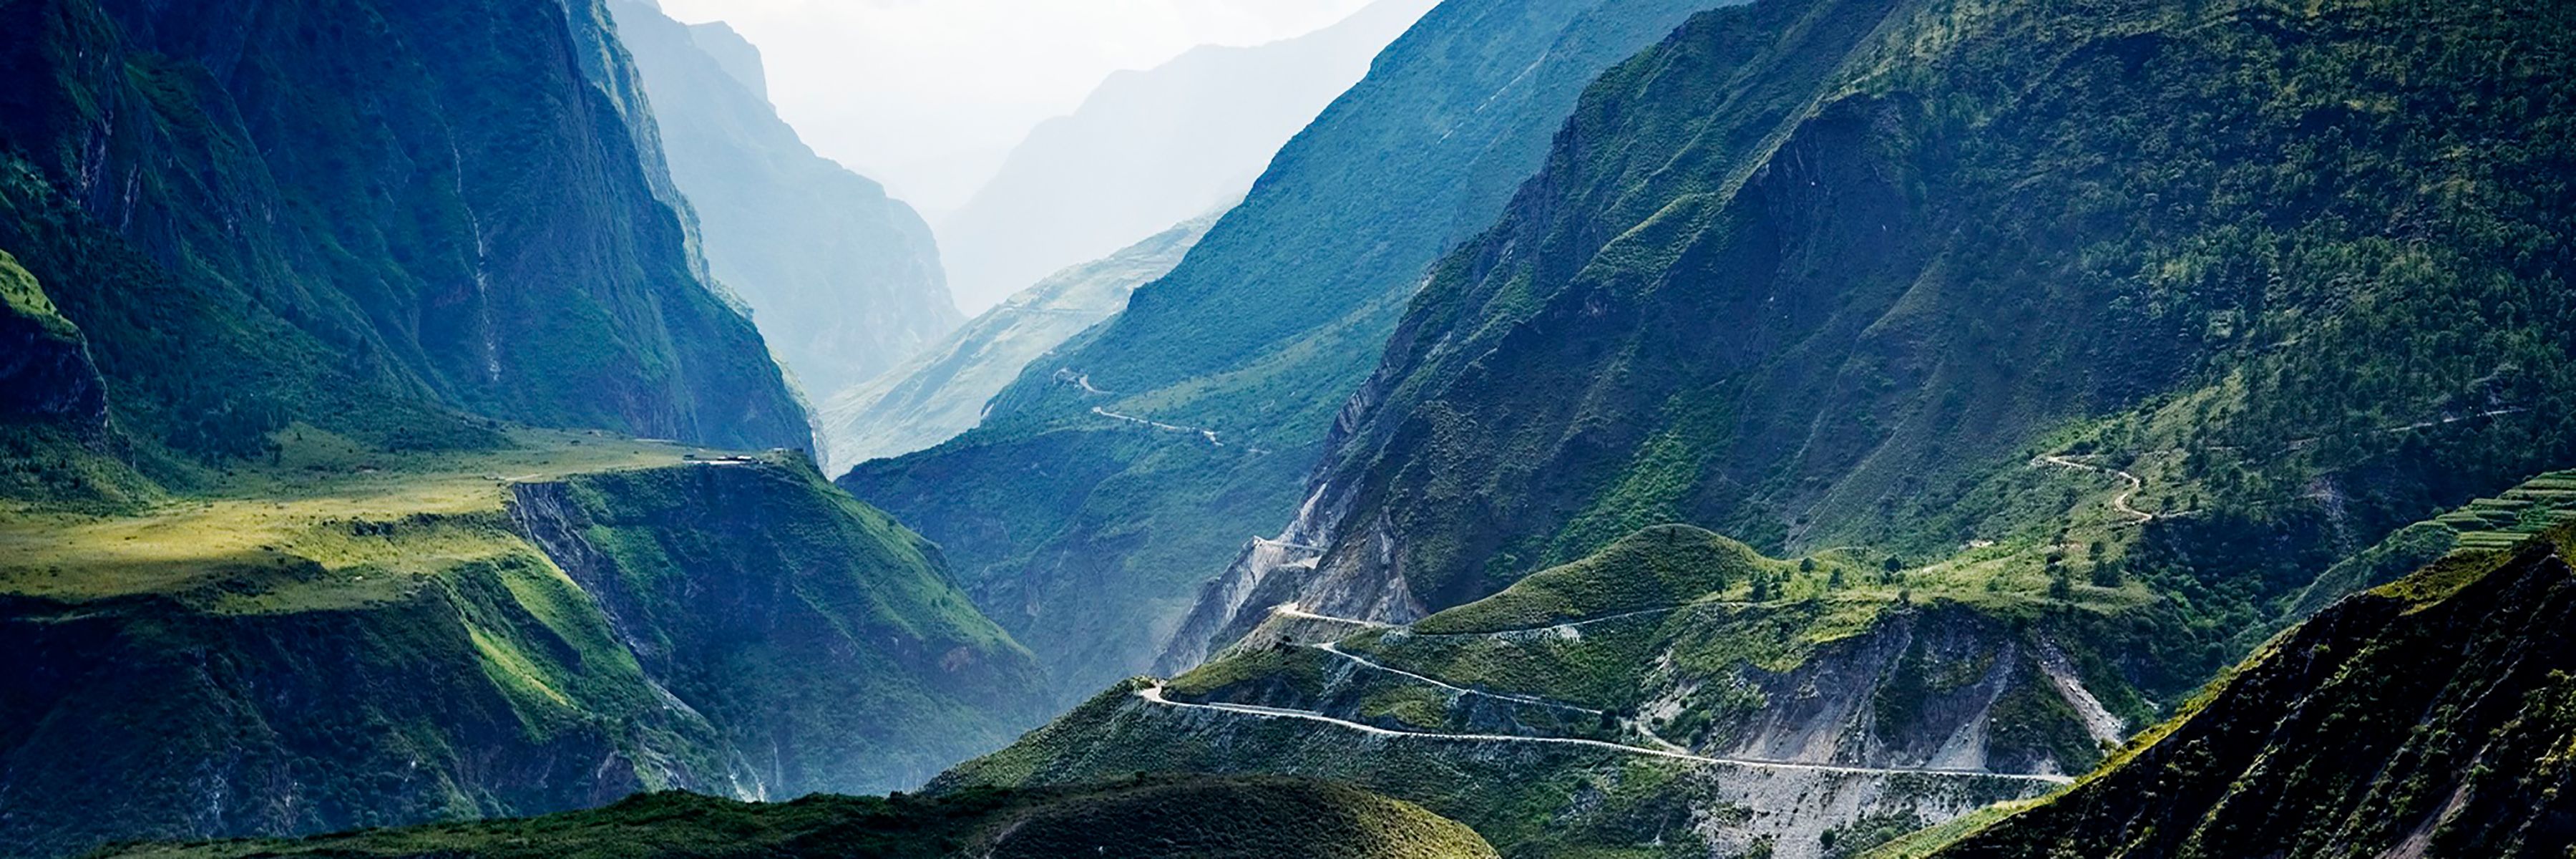 China Reise: Faszinierendes Yunnan und heilige Berge